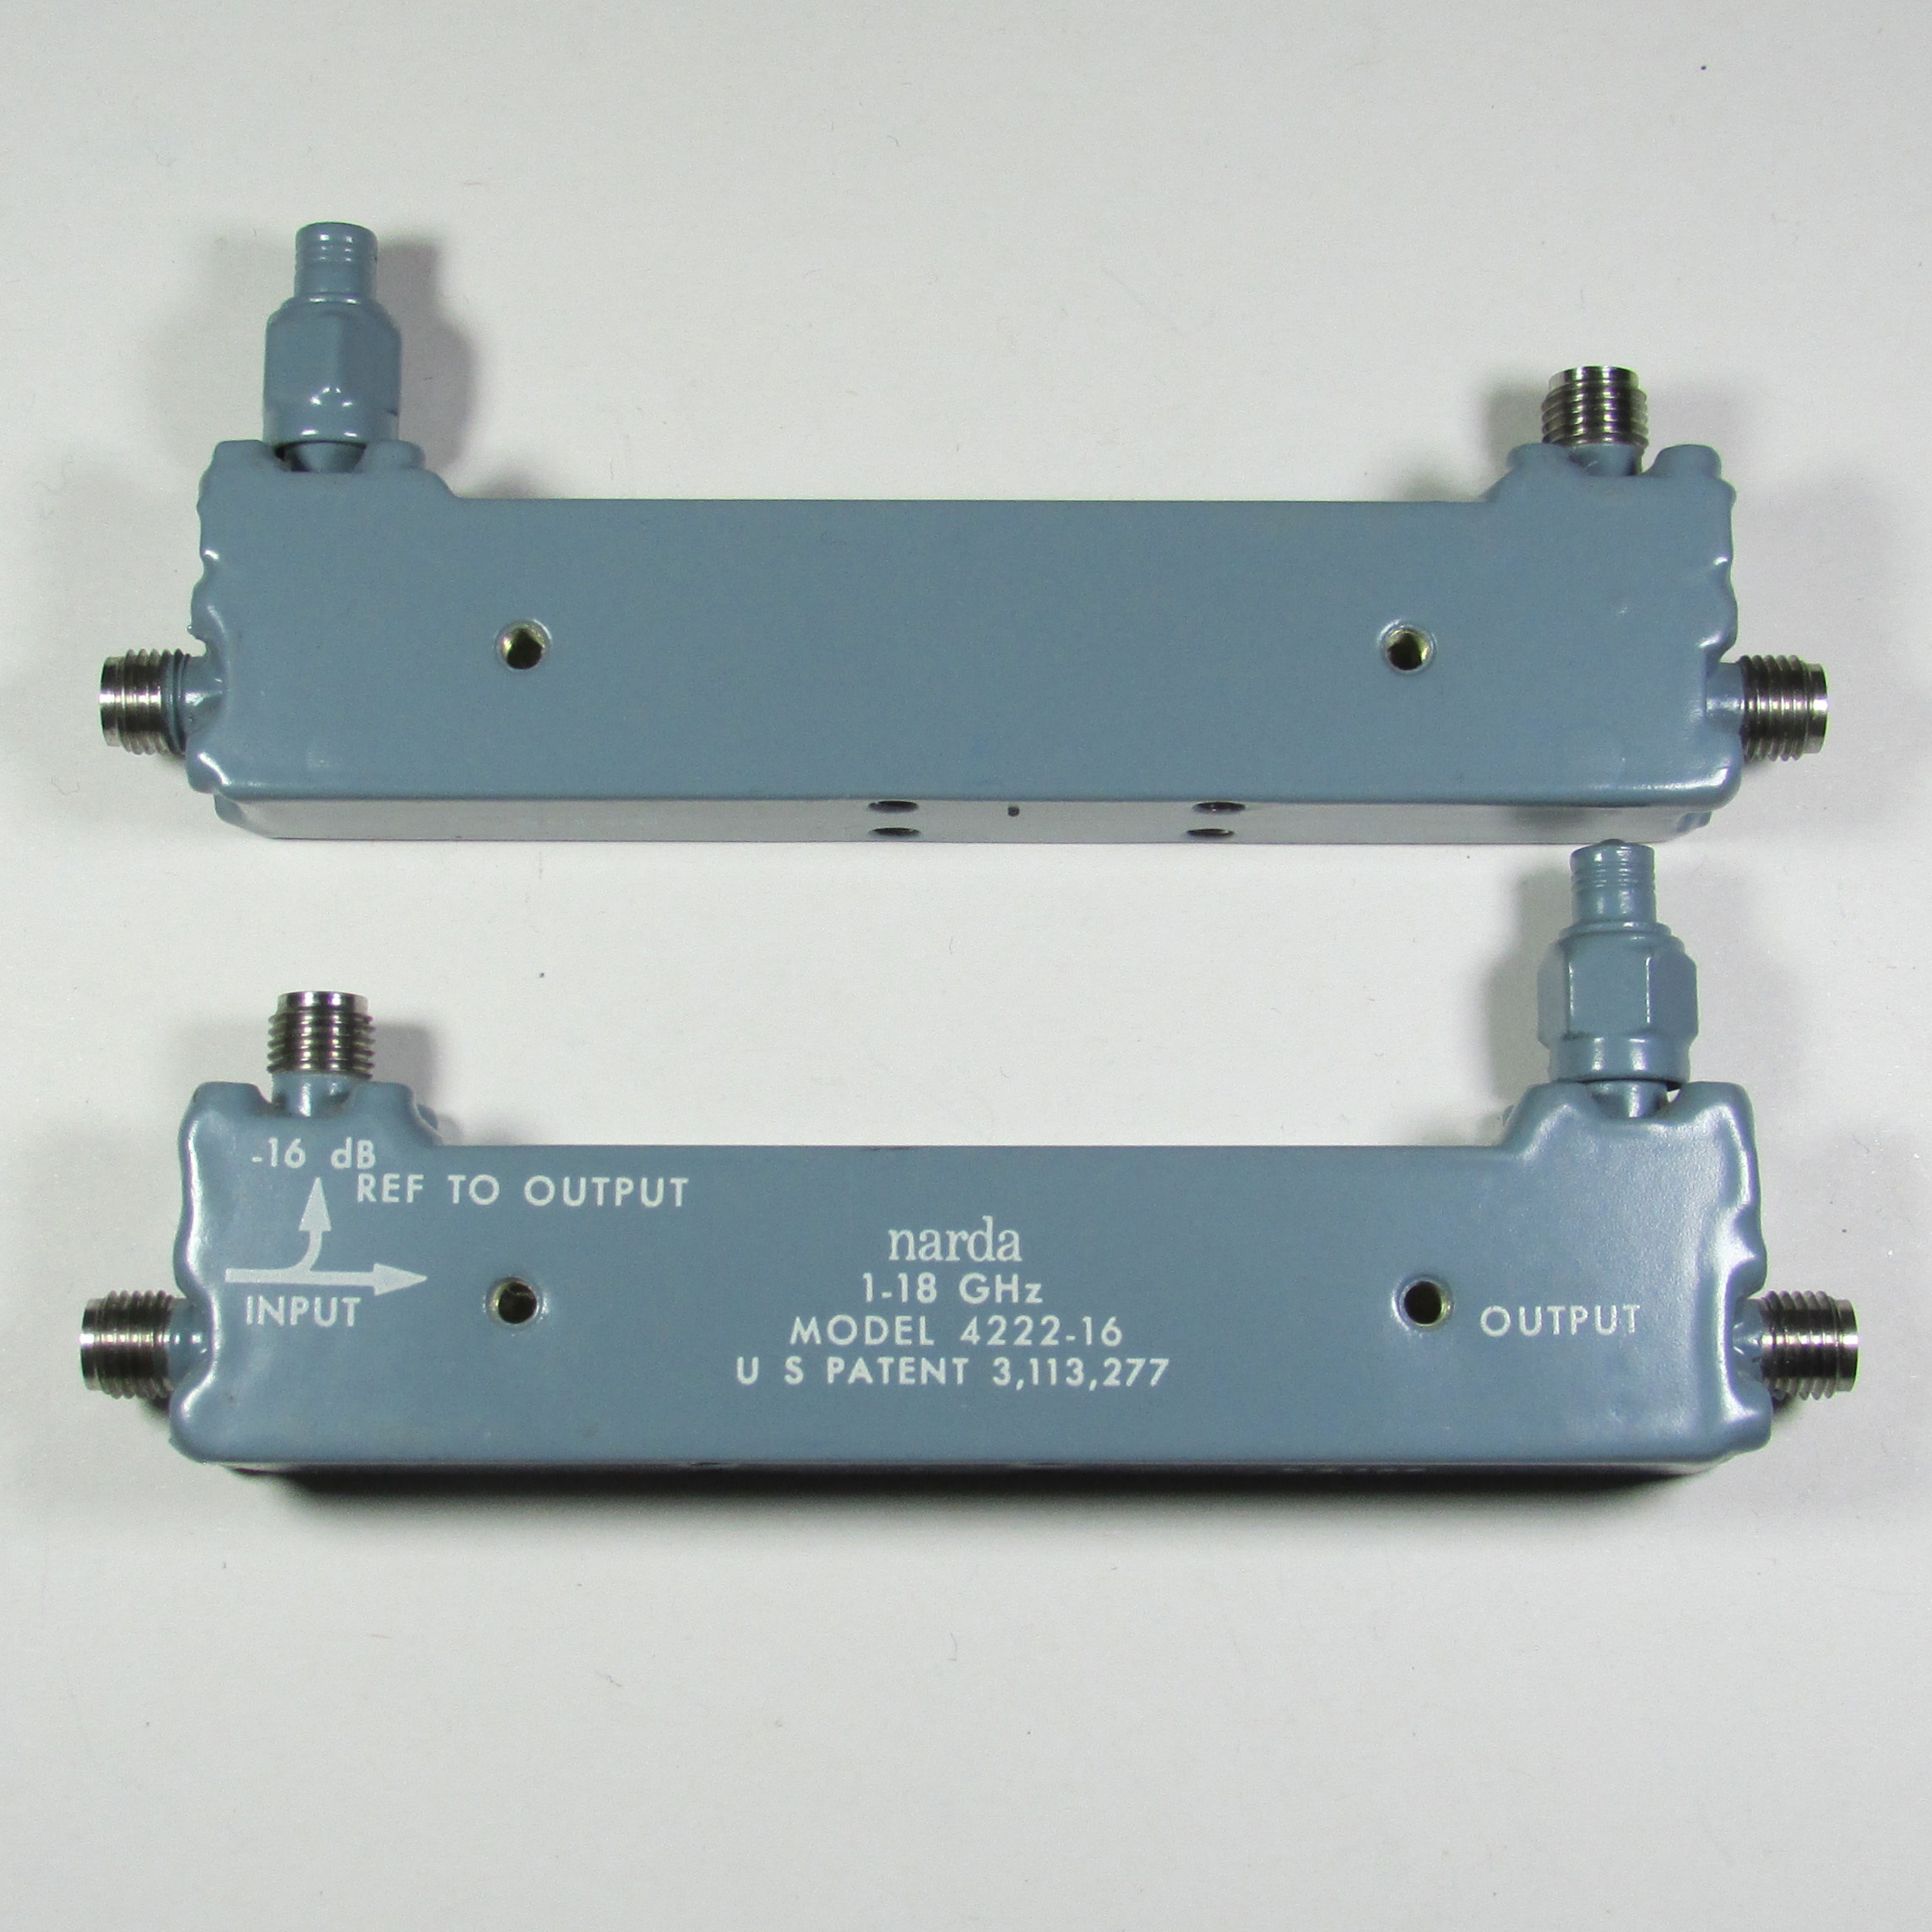 Narda 4222-16 1-18GHz 16dB SMA RF Microwave Broadband Directional Coupler